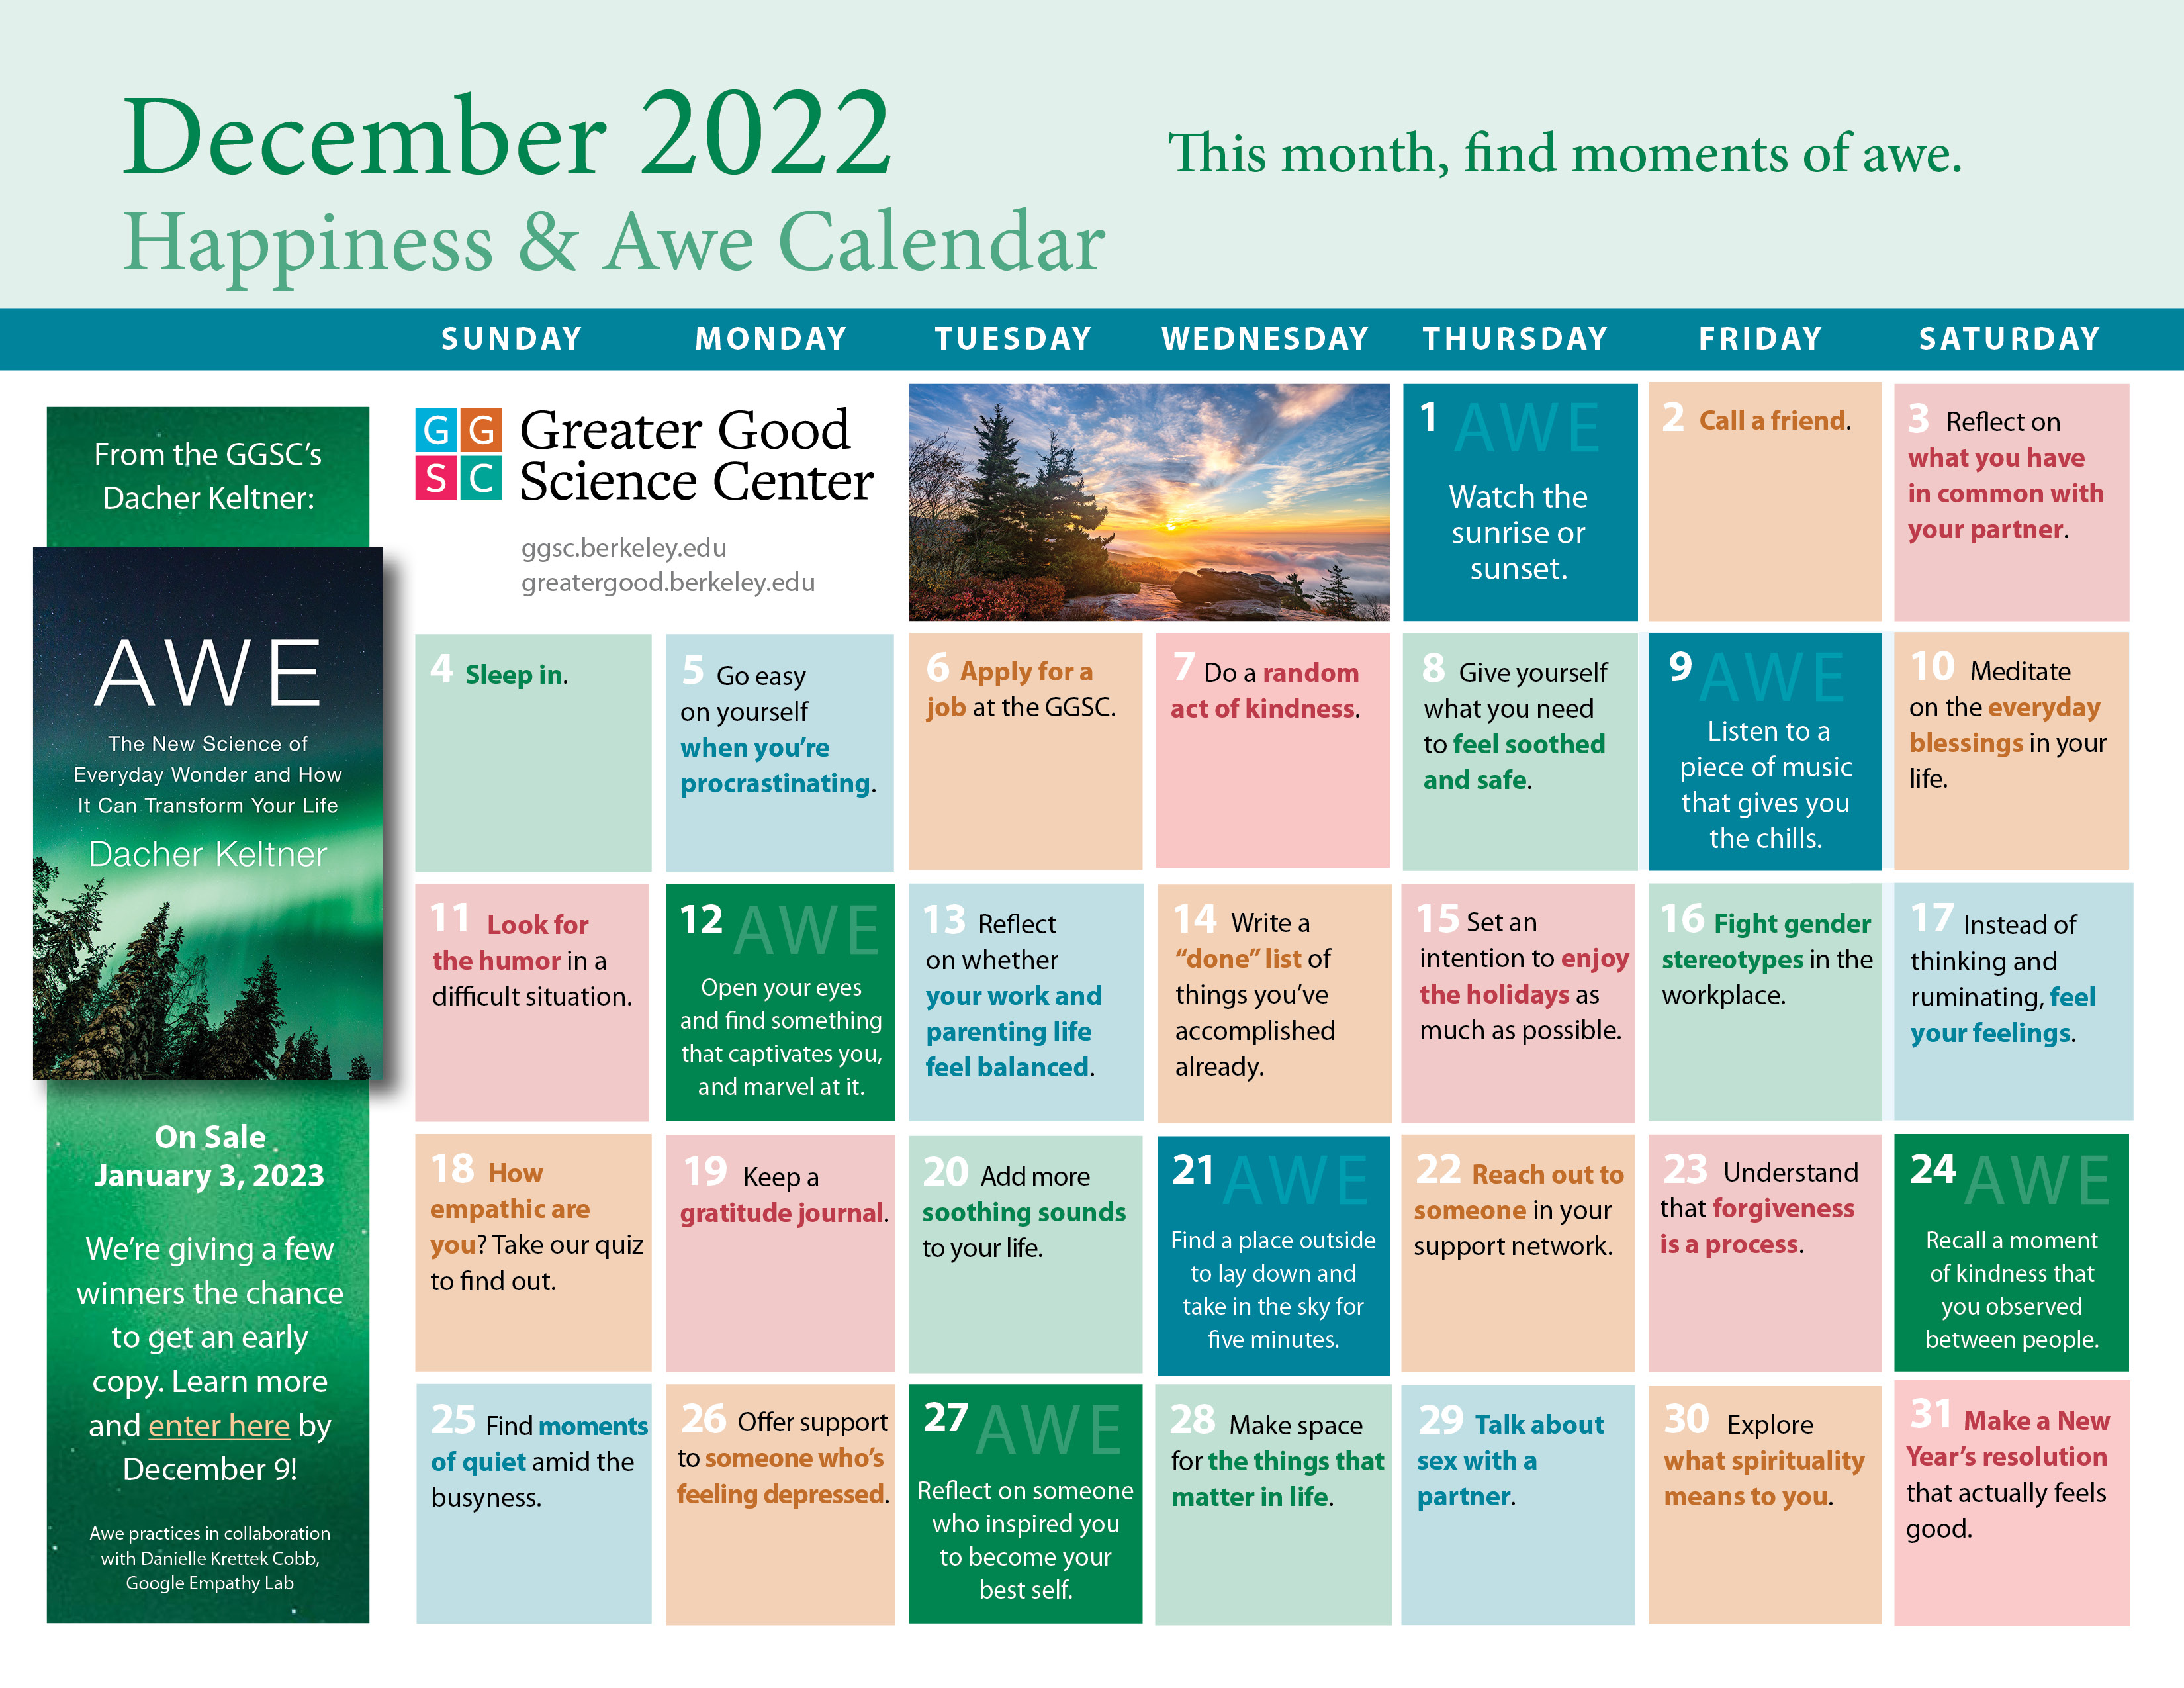 December 2022 happiness calendar